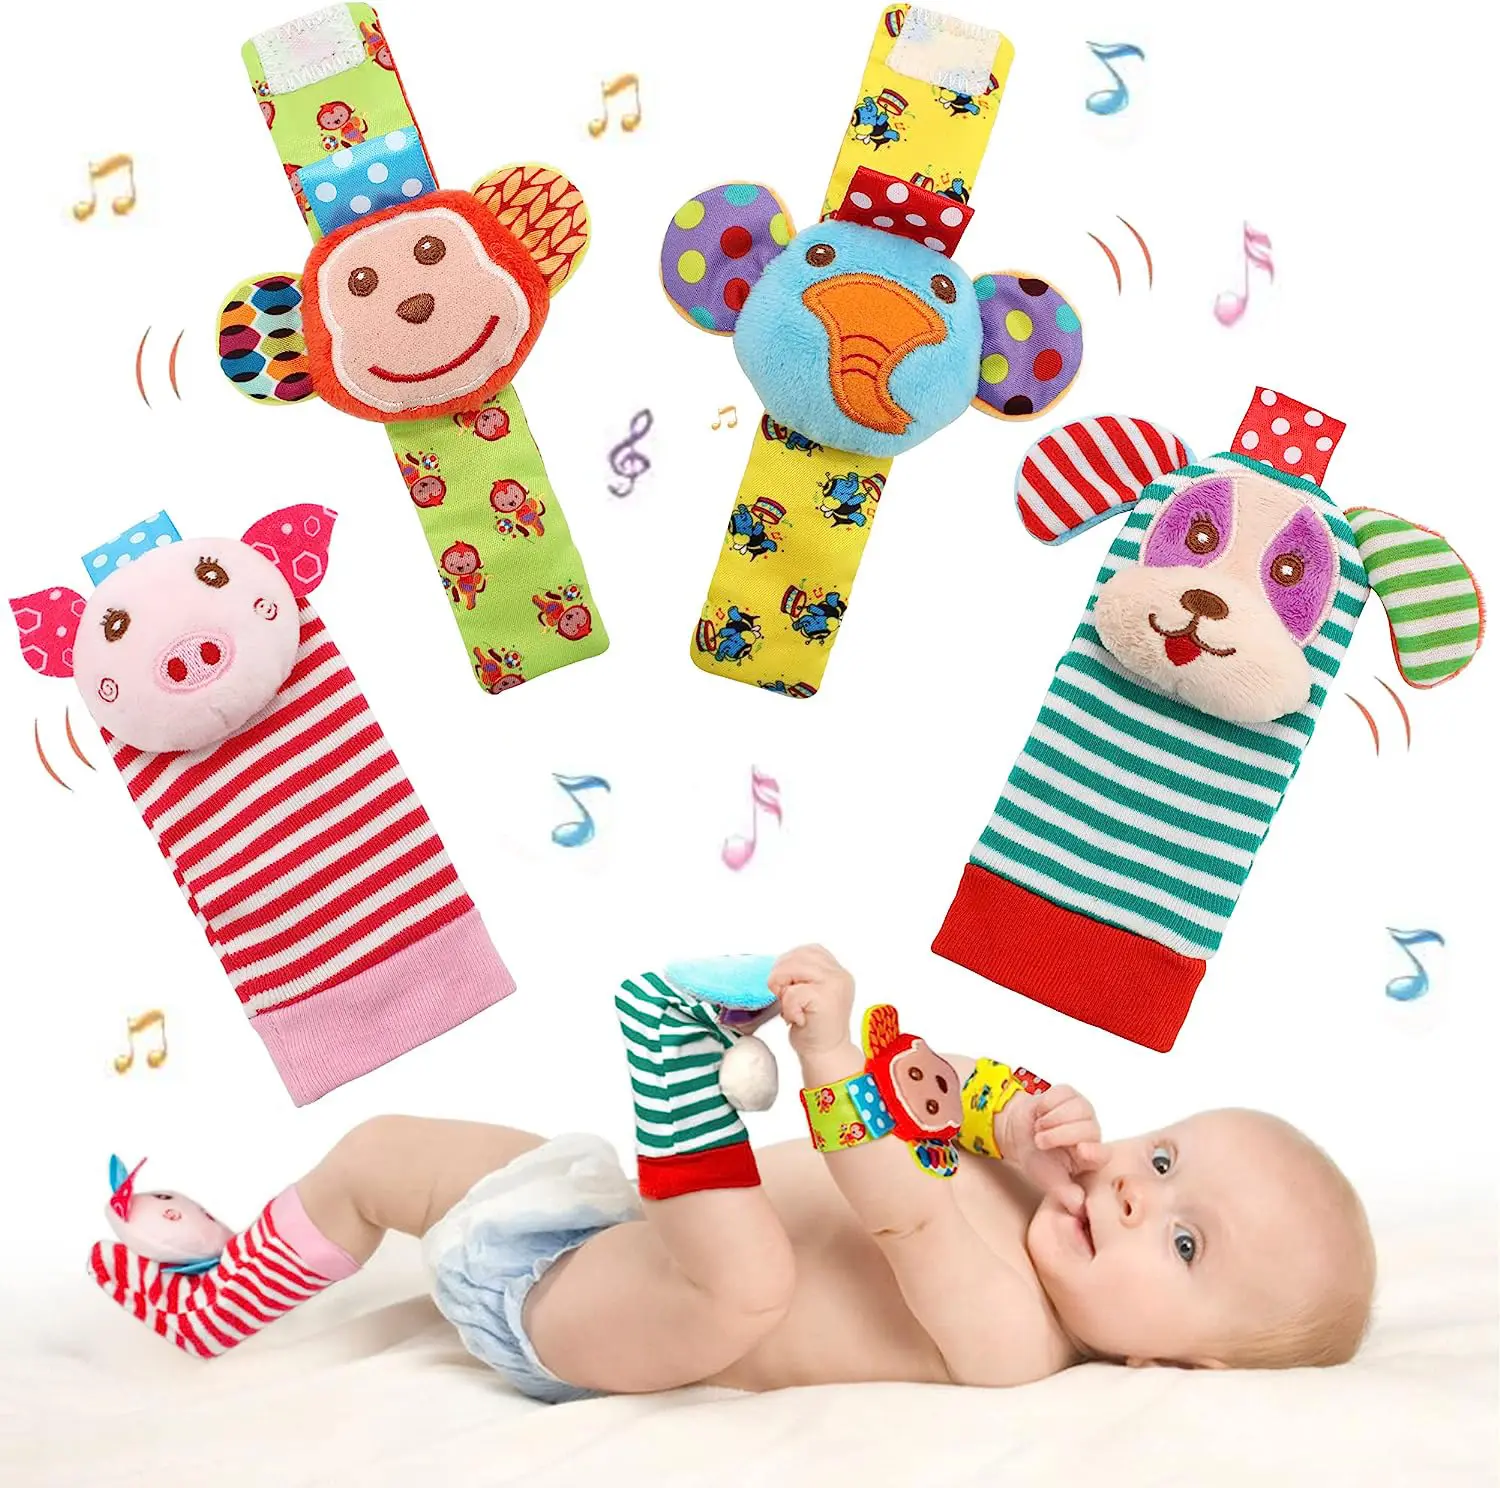 बेबी खिलौने कलाई झुनझुने फुट फाइंडर रैटल सॉक बेबी टॉडलर खिलौना रैटल खिलौना 0 1 2 3 साल के छोटे लड़कों या लड़कियों के लिए